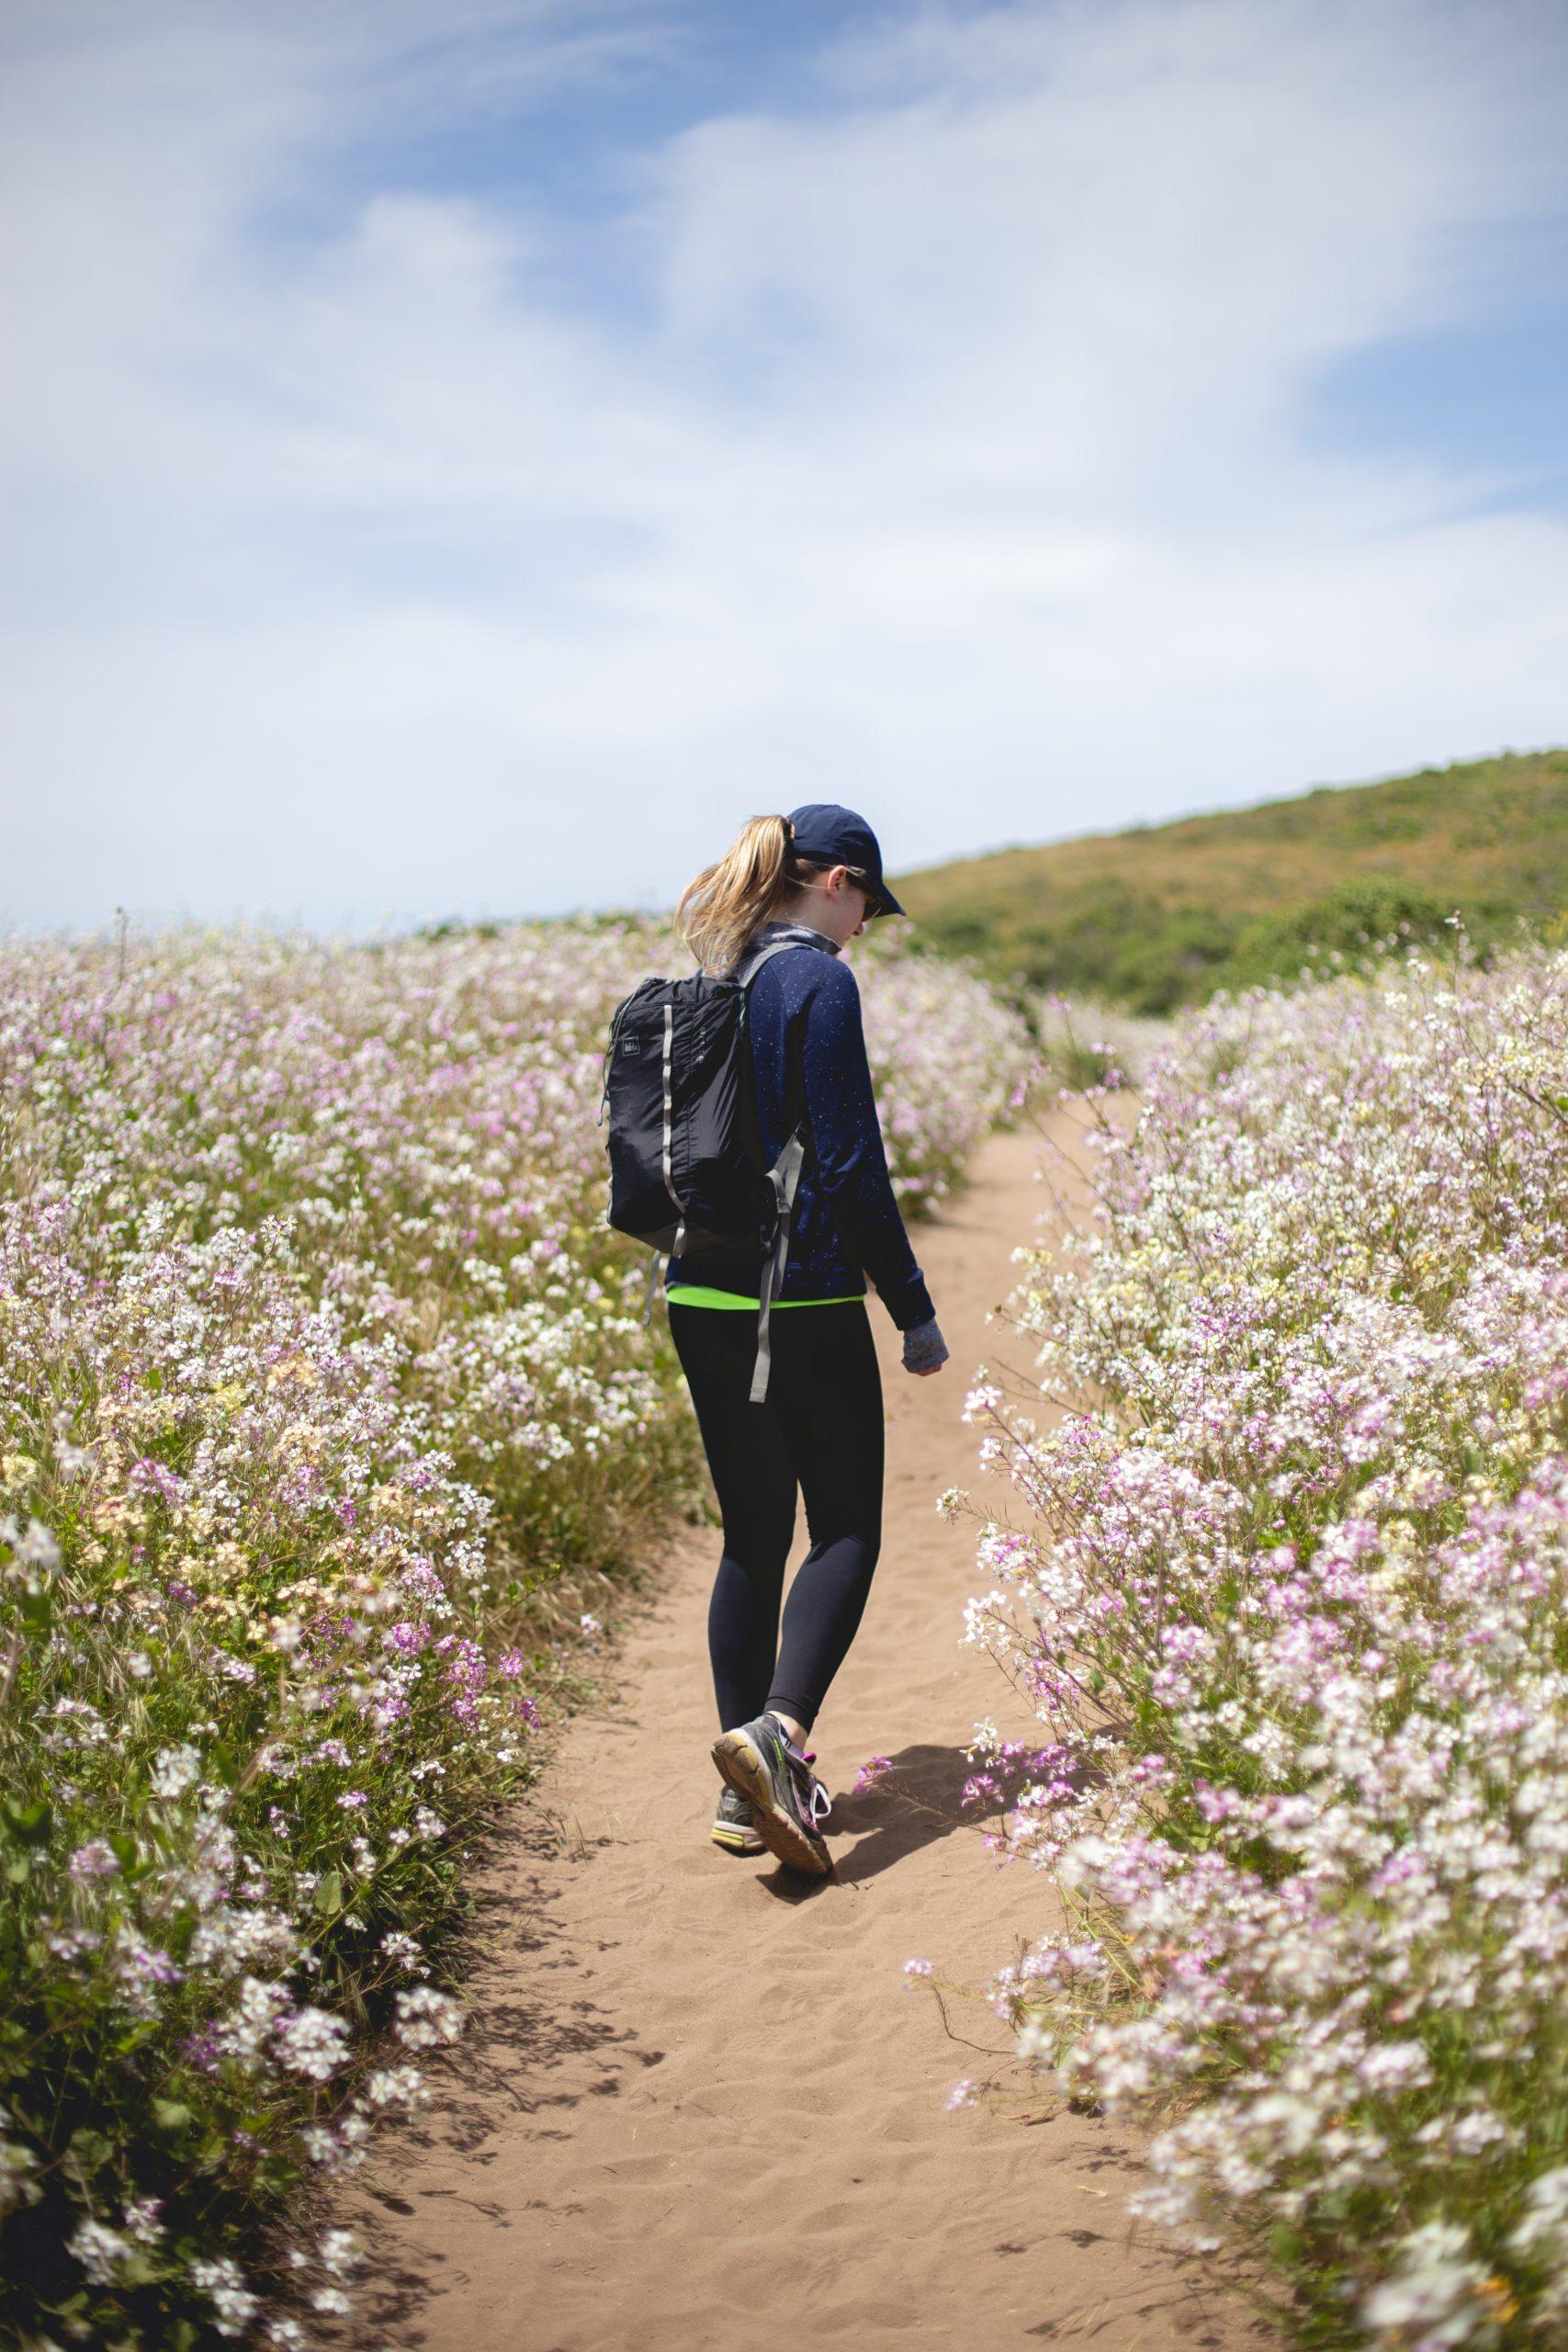 Đi bộ bên cạnh việc rèn luyện thể chất tốt còn giúp bạn giảm áp lực và căng thẳng từ cuộc sống cực kỳ hiệu quả. (Nguồn: Internet)